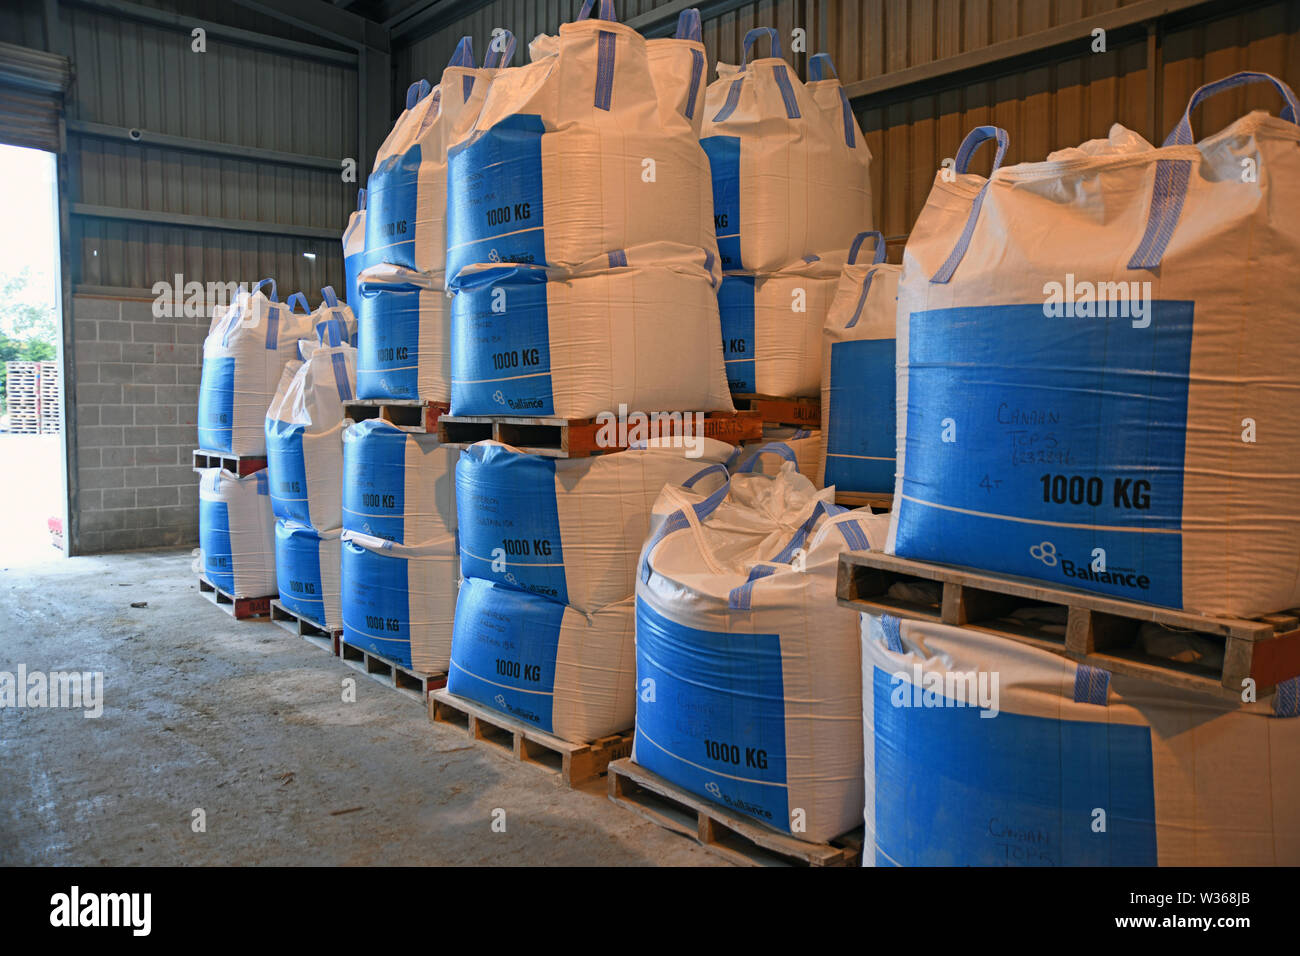 CHRISTCHURCH, NEW ZEALAND, DECEMBER 12, 2018: Several cubic metre bags of bulk fertiliser await shipment at a factory. Stock Photo